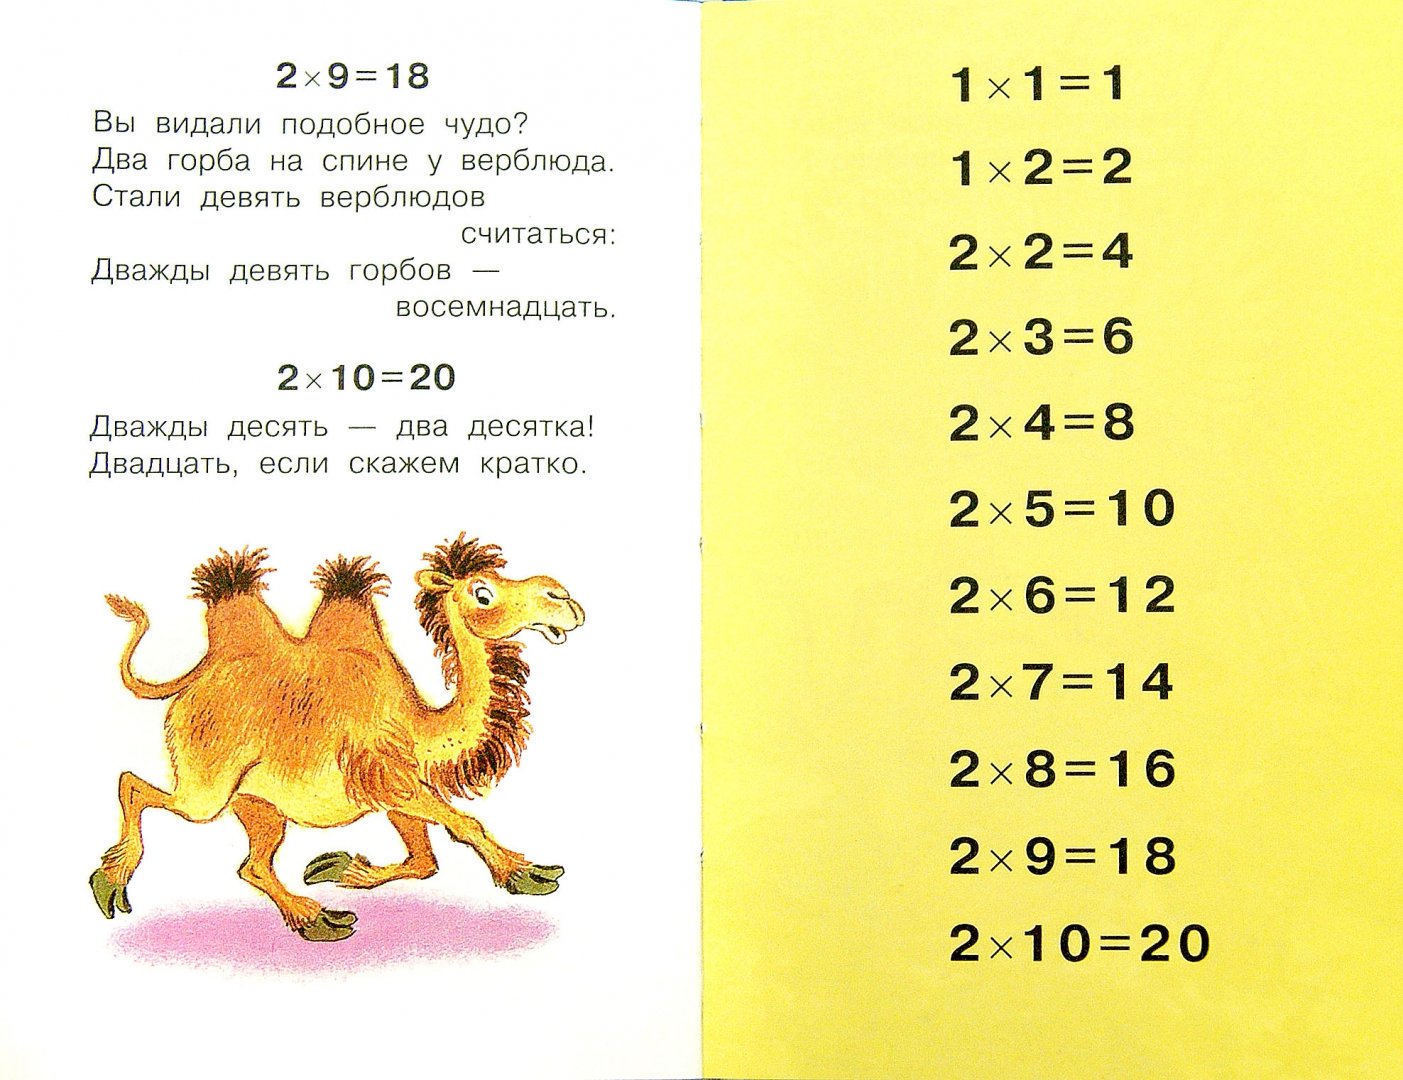 Иллюстрация 1 из 14 для Таблица умножения в стихах - Андрей Усачев | Лабиринт - книги. Источник: Лабиринт